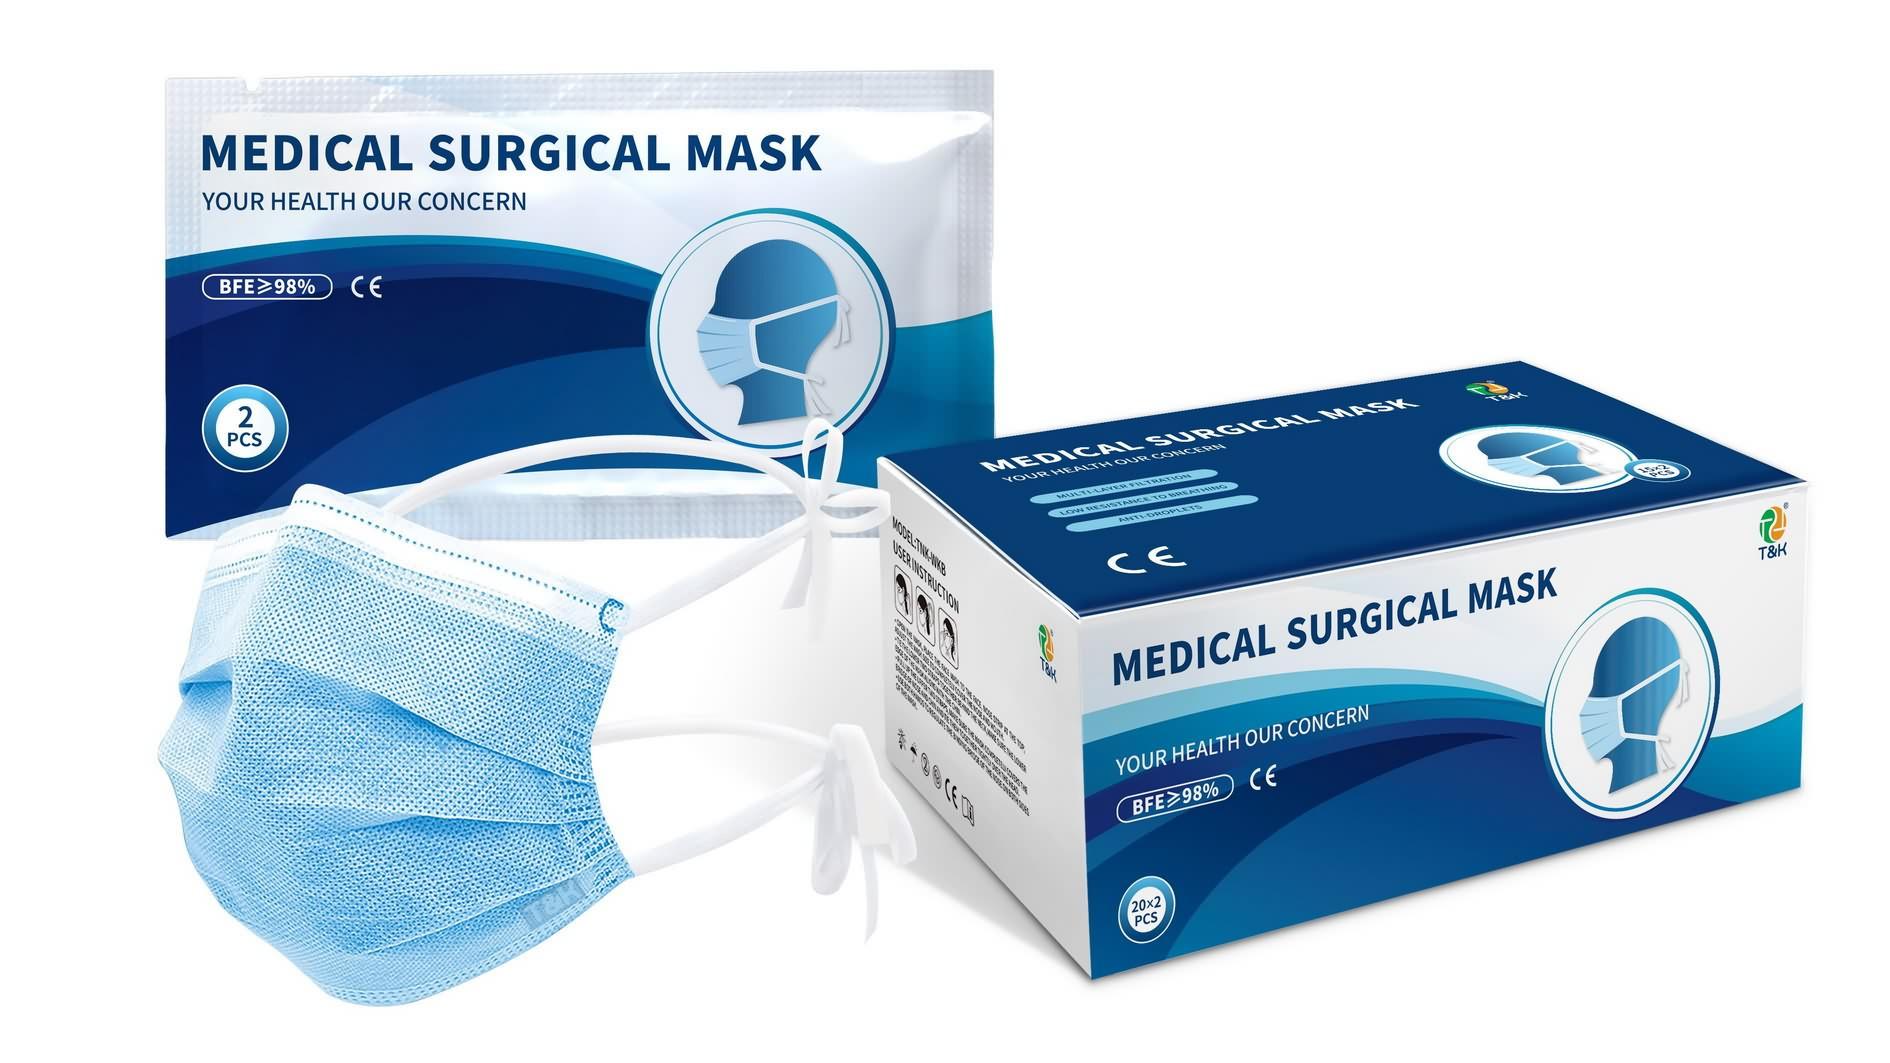 ခွဲစိတ်မှုမျက်နှာဖုံးသည် ဆေးဘက်ဆိုင်ရာမျက်နှာဖုံးတစ်ခုလား။ Medical Surgical Mask ဆိုတာ ဘာလဲ။ - နာမည်ကြီး ဆေးဘက်ဆိုင်ရာ surgical mask စျေးနှုန်း